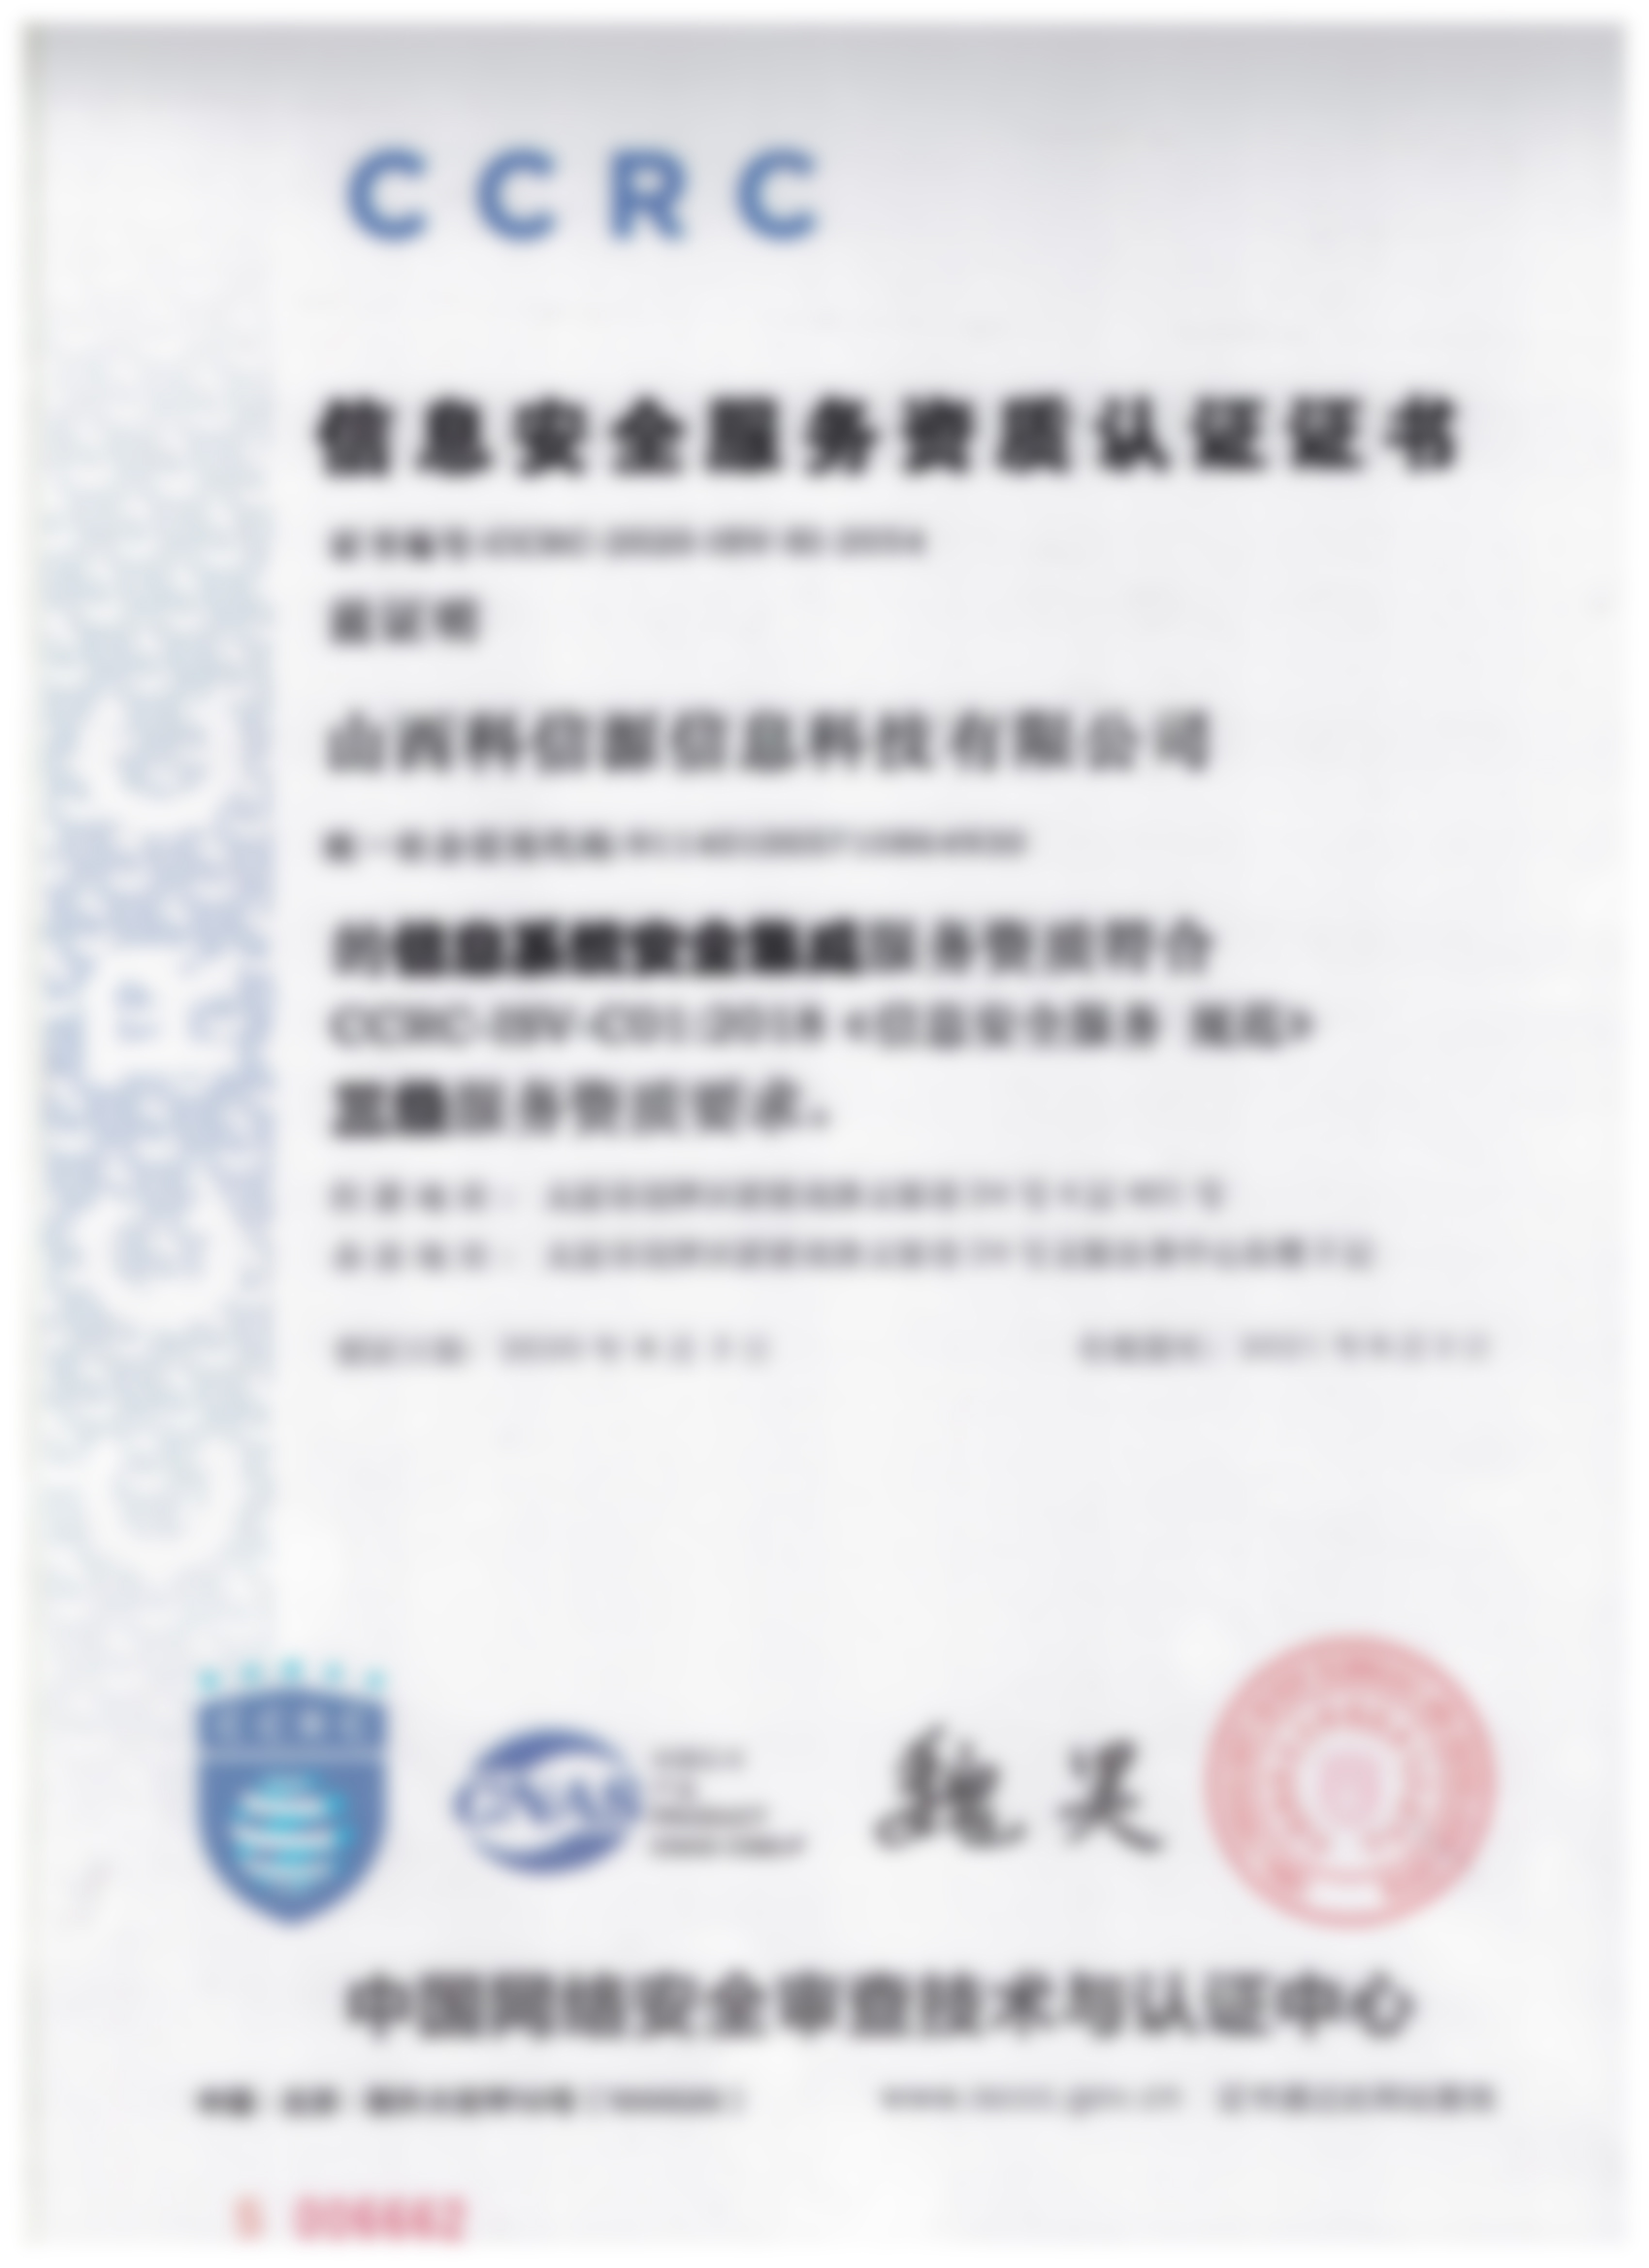 3776信息安全服务资质认证证书